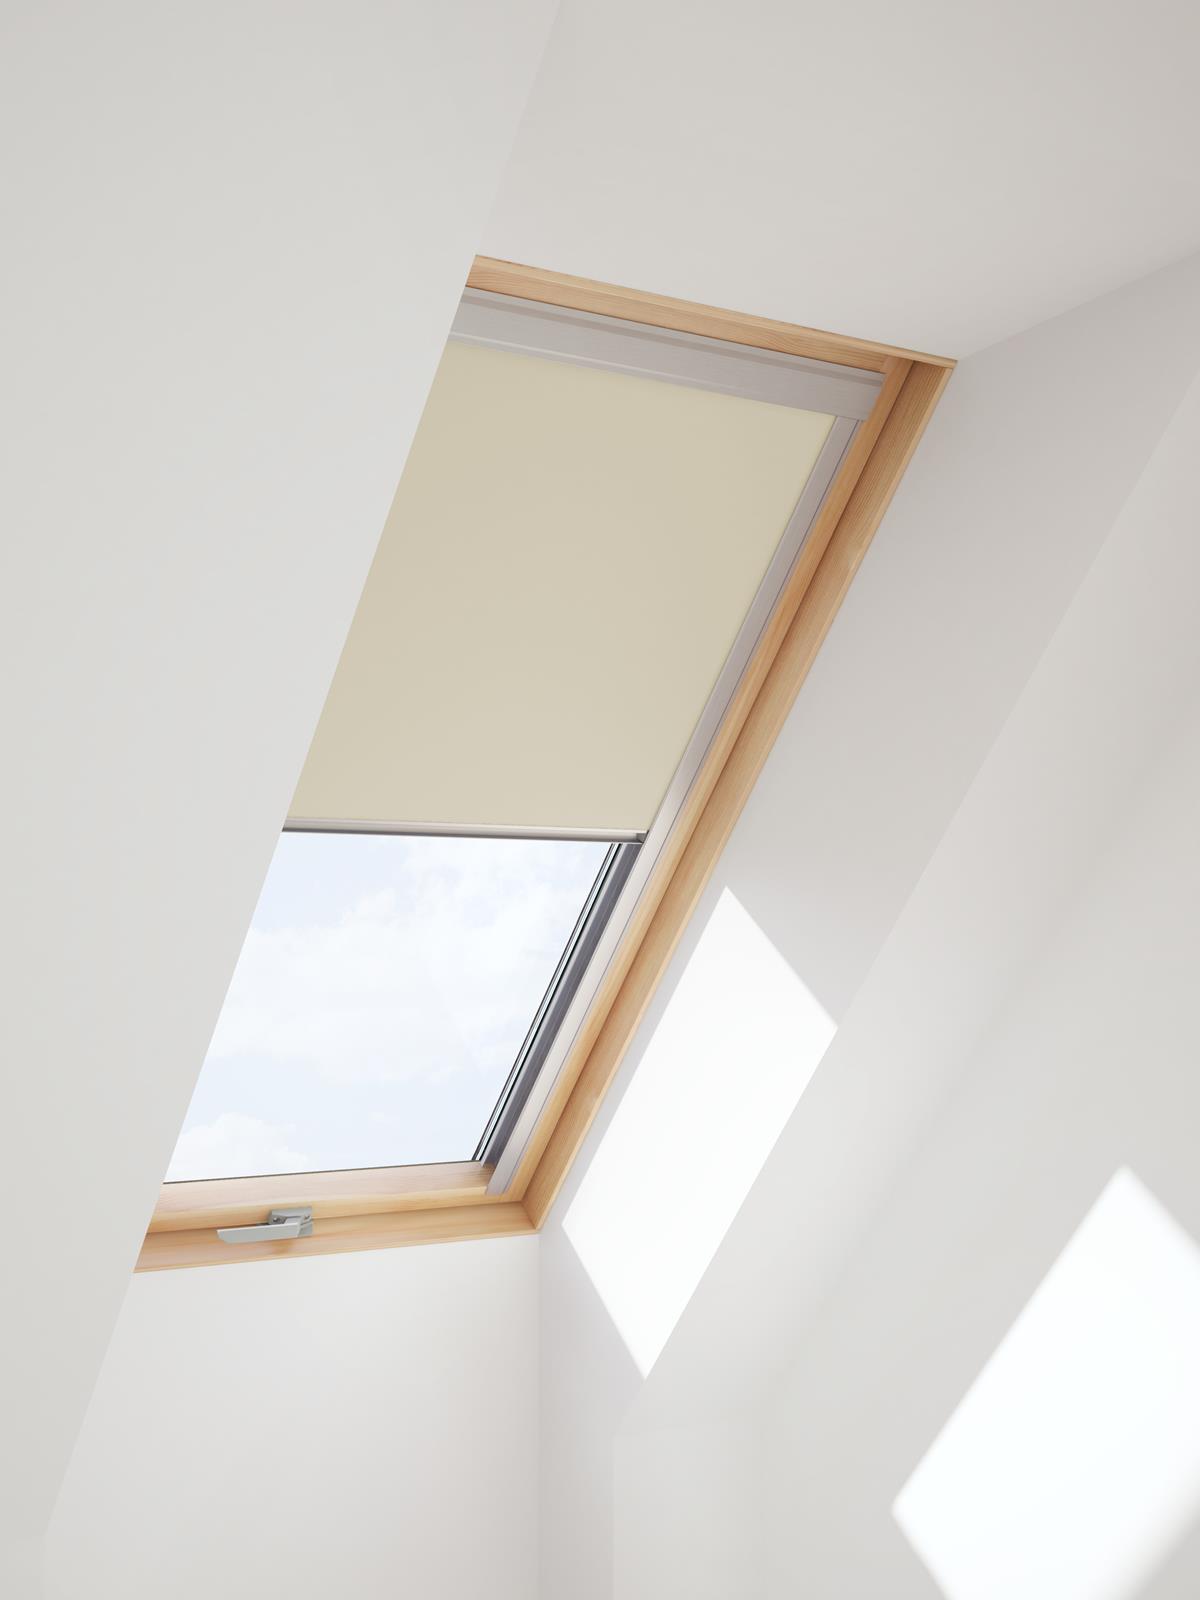 Verdunkelungsrollo für VELUX Dachfenster in beige Farbe